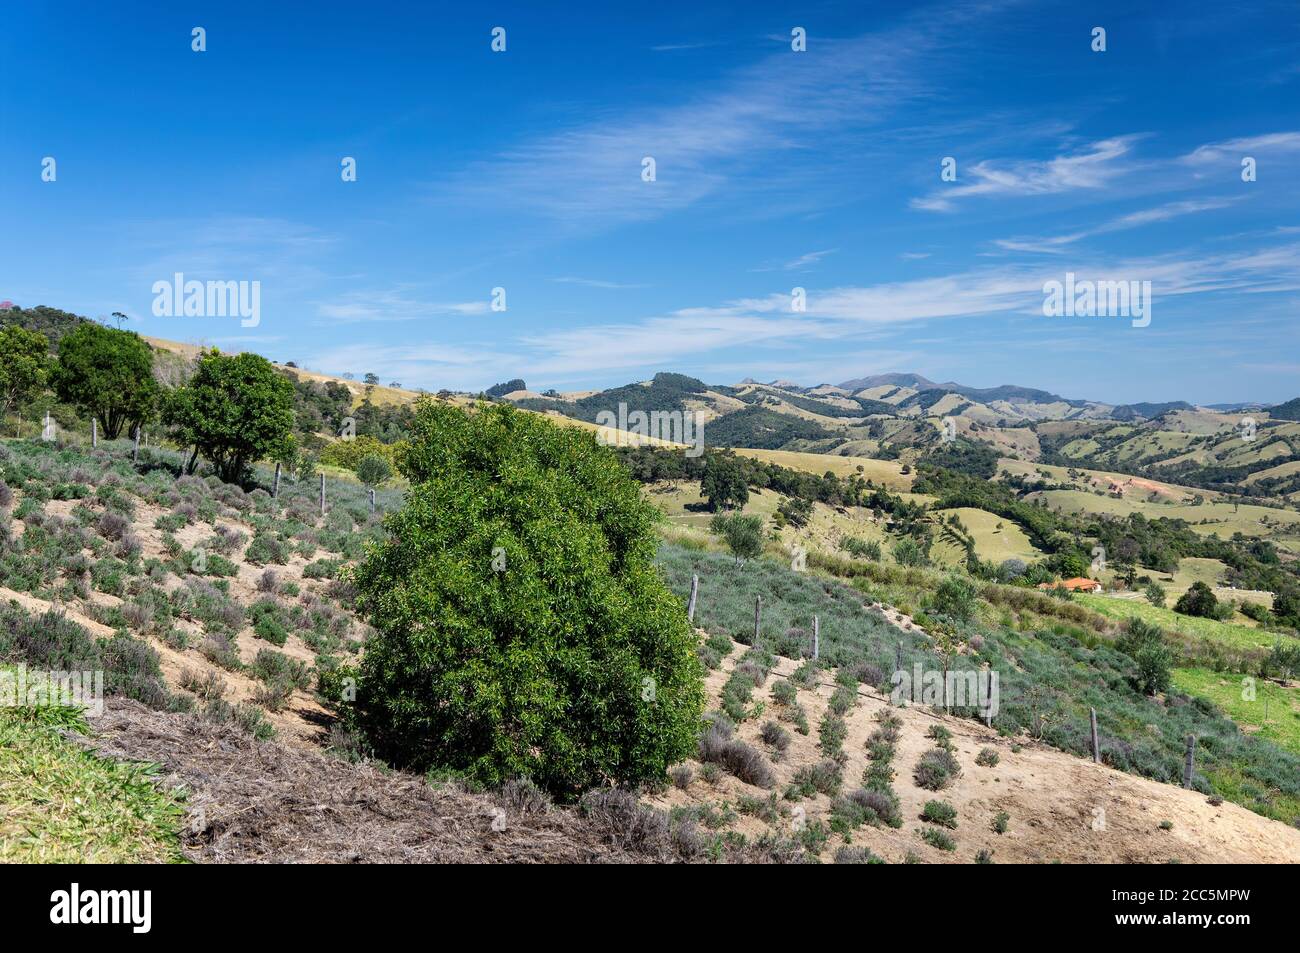 Bella vista paesaggio visto dai campi di lavanda piantagione di 'o Lavandario' fattoria con alcuni cespugli di Lavandula dentata in fase di coltivazione collina. Foto Stock